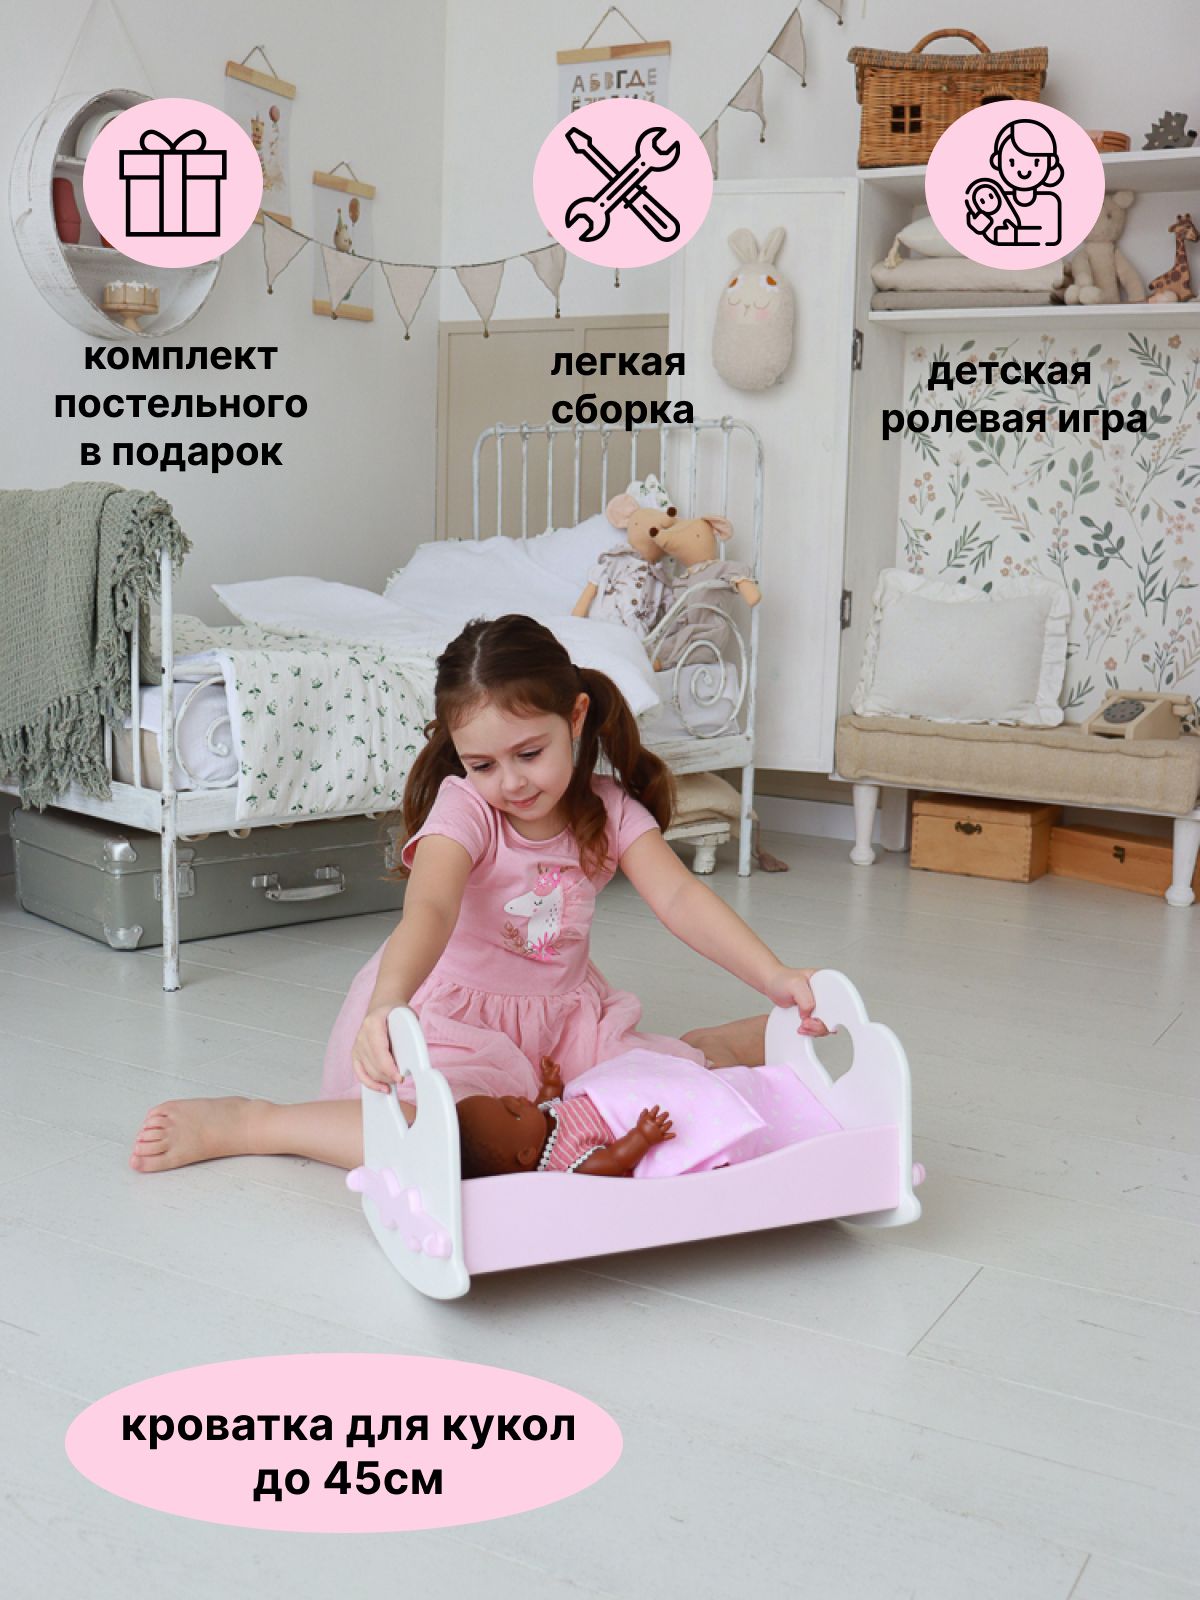 Мебель для кукол купить в интернет-магазине игрушек Жирафка: цены, отзывы, характеристики